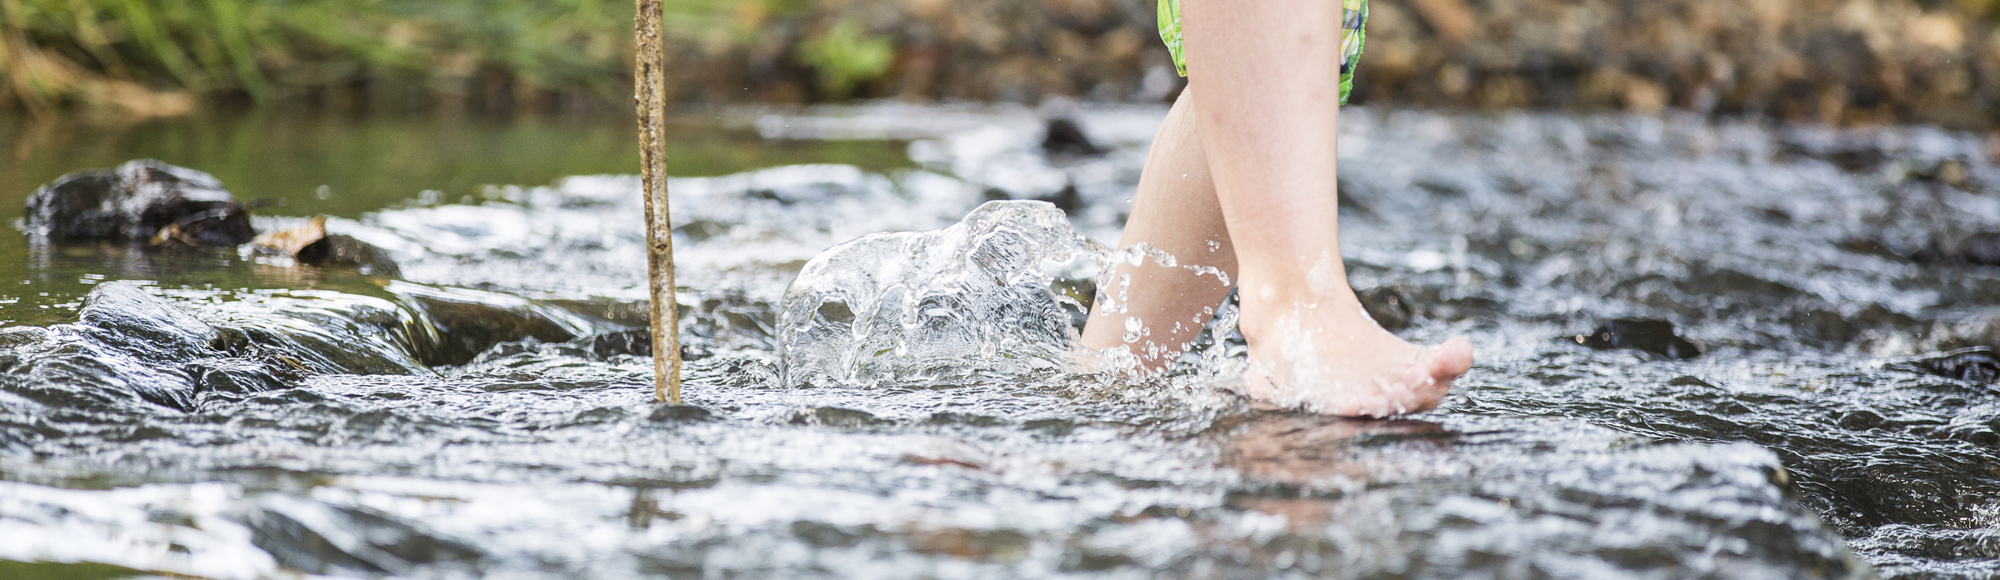 Kind loopt met blote voeten door het water met een stok